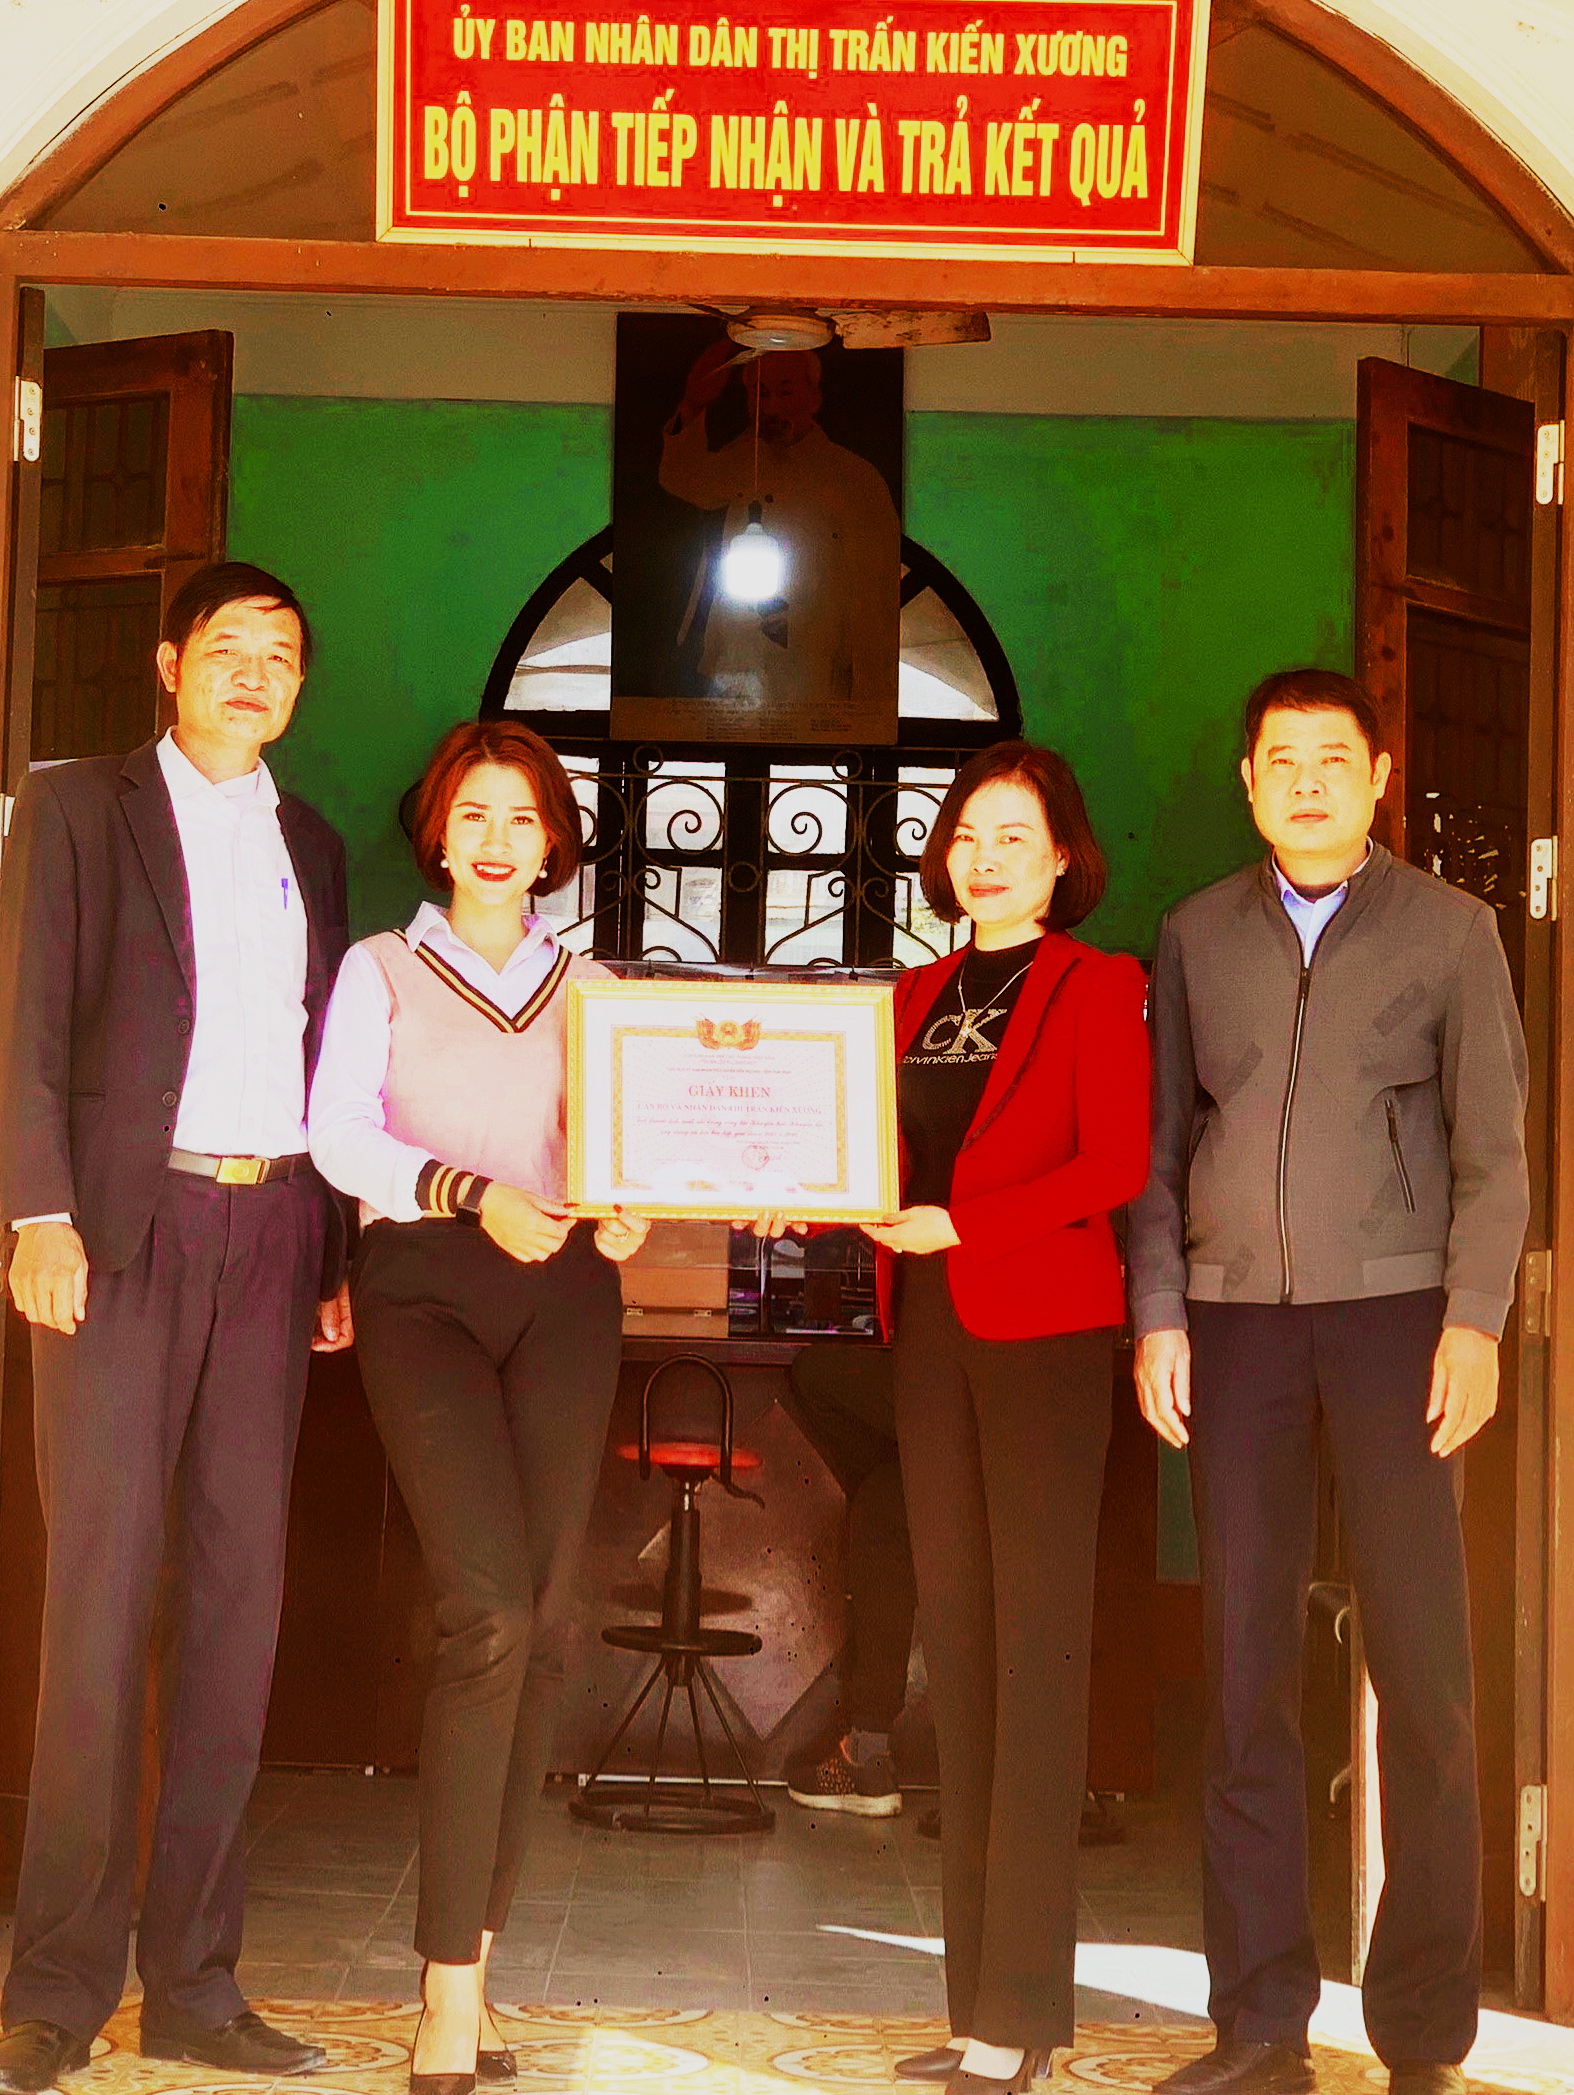 Đồng chí Nguyễn Thị Kim Tuyến – PCT UBND thị trấn Kiến Xương trao Giấy khen cho doanh nhân Trang Khểnh